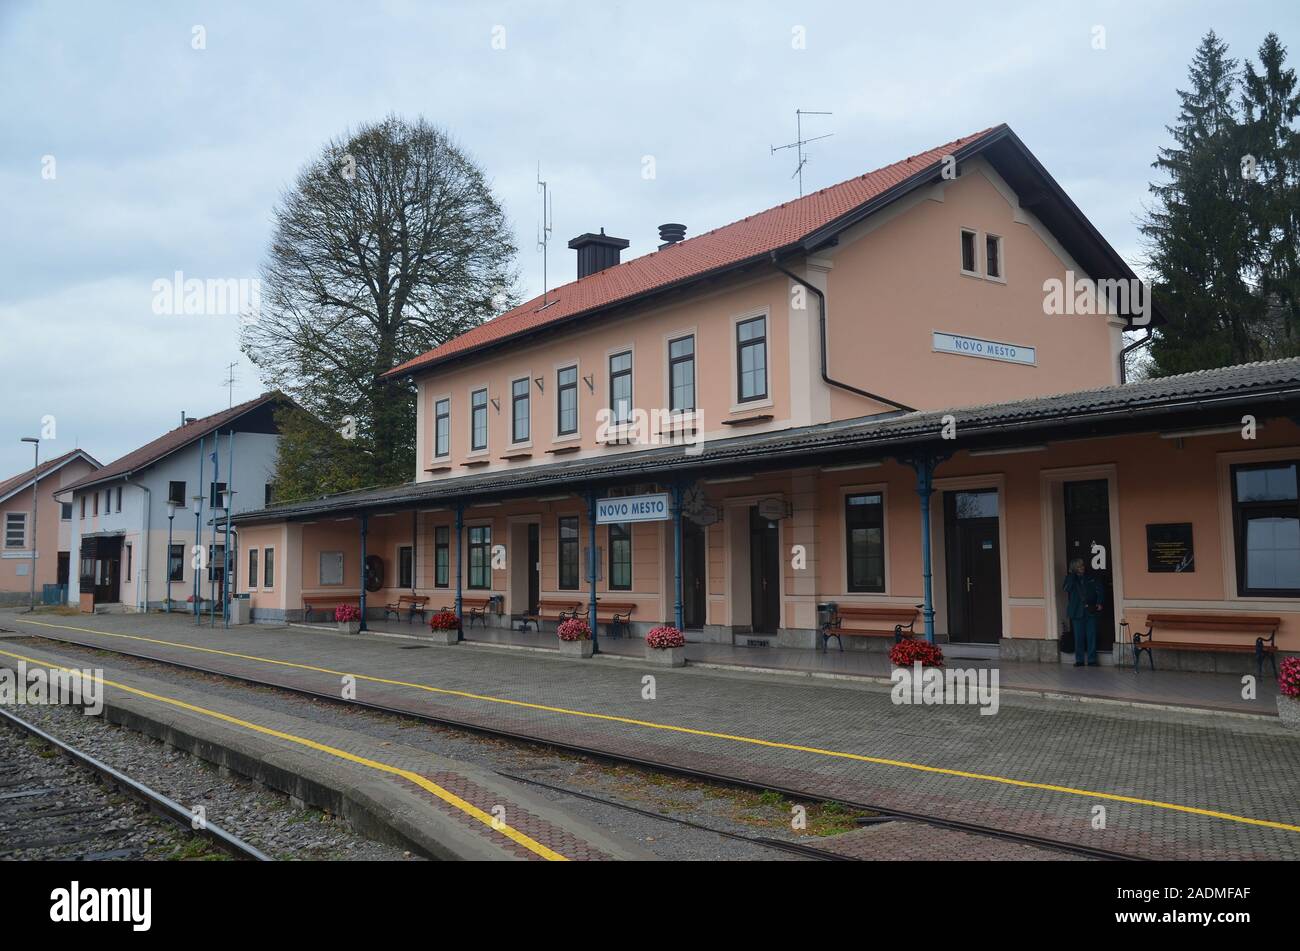 Die Kleinstadt Novo Mesto, Rudolfswerth, in Slowenien: der Bahnhof Stock Photo